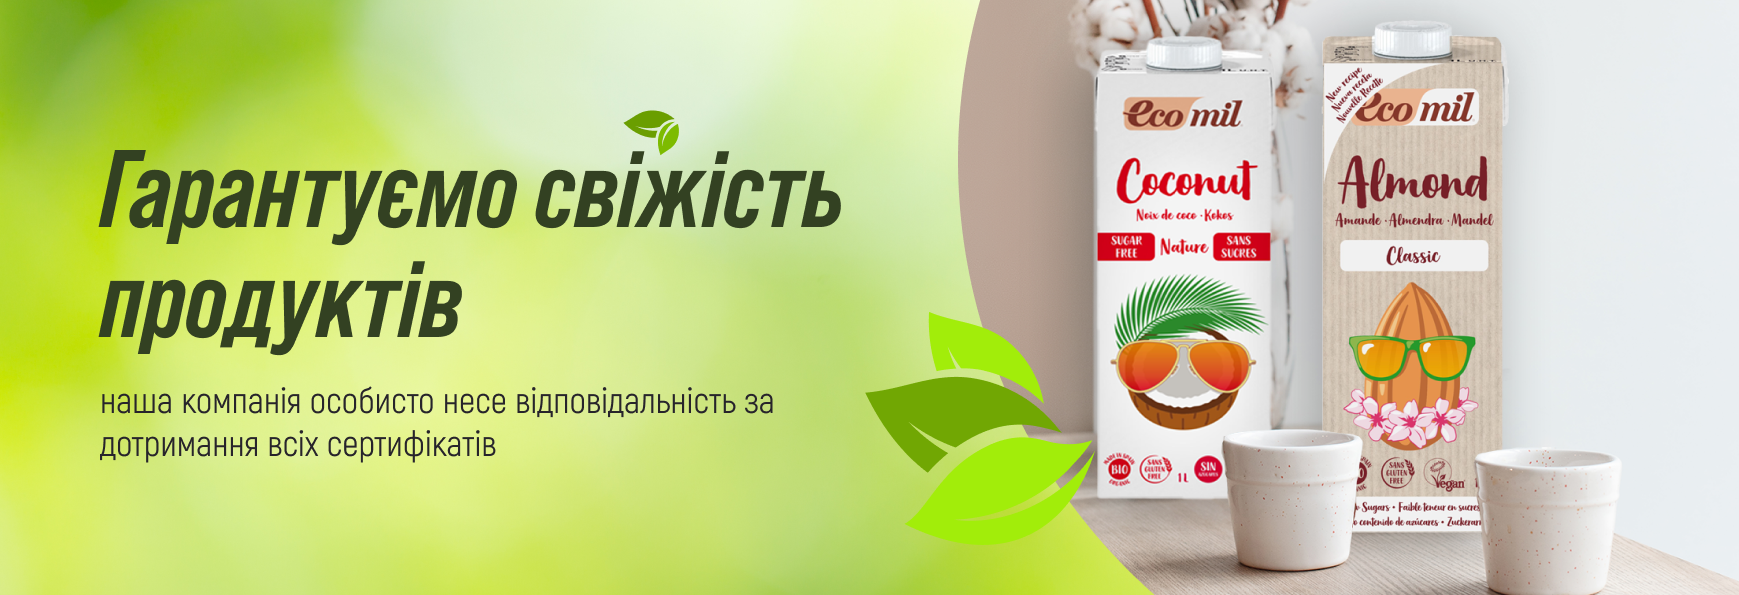 Юнимед - интернет-магазин органической продукции в Украине